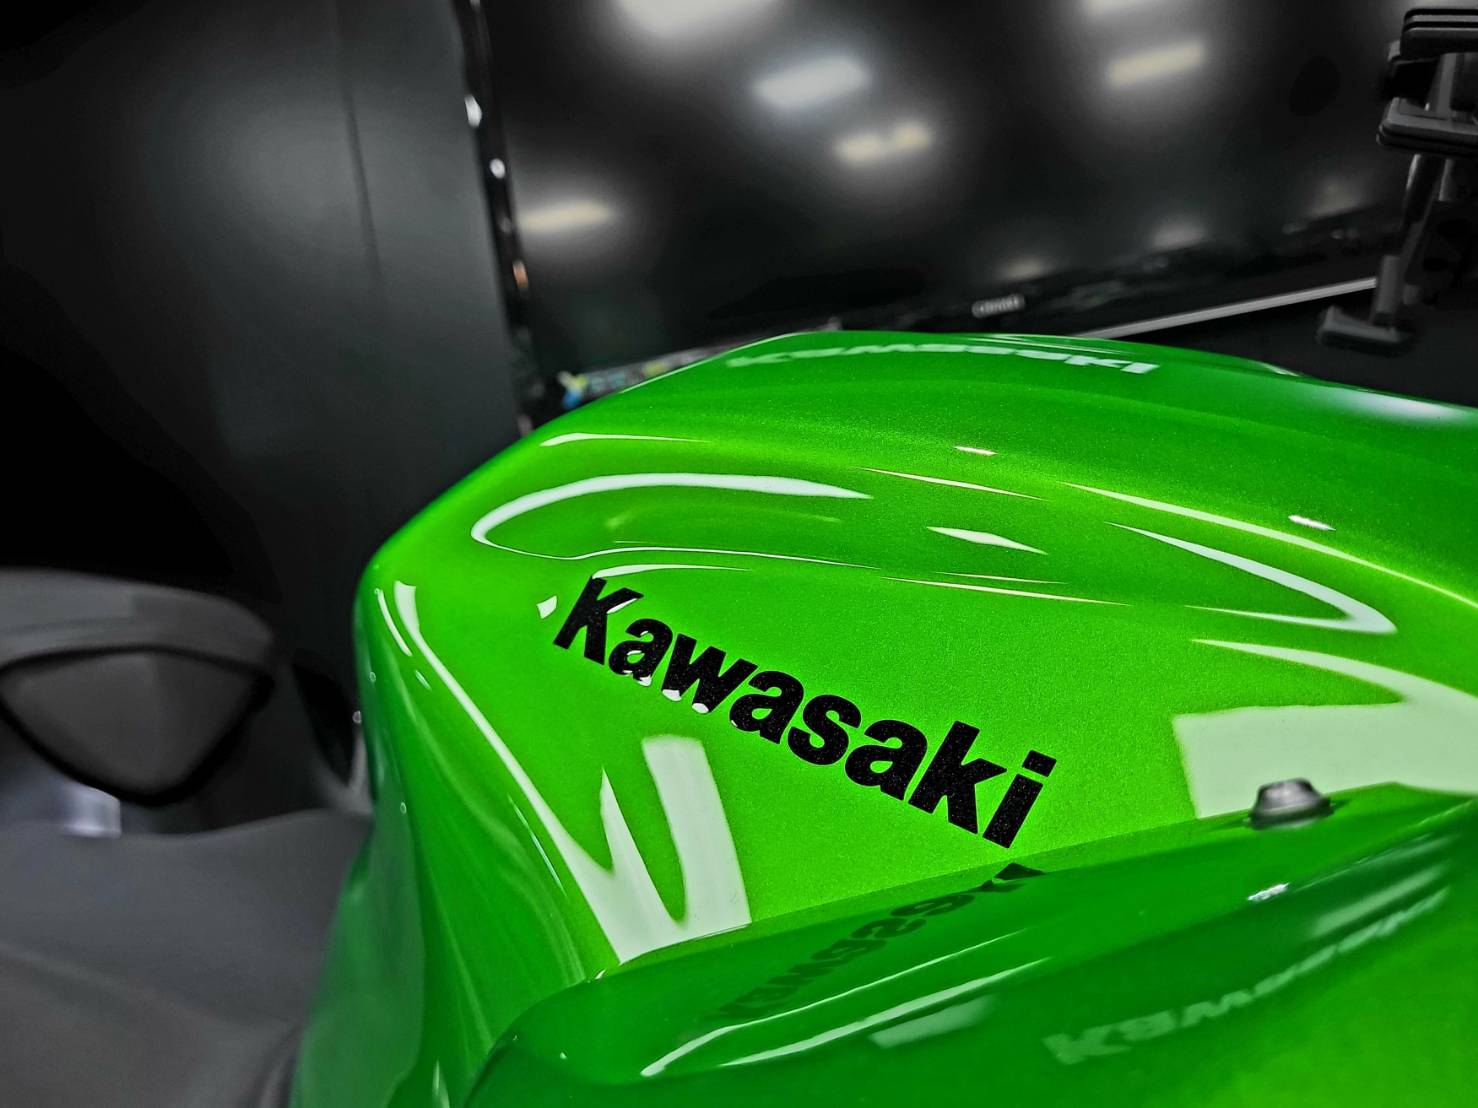 KAWASAKI Z400 - 中古/二手車出售中 內湖柏霖動機x川崎展示中心x原廠認證新古車-Z400 | 個人自售